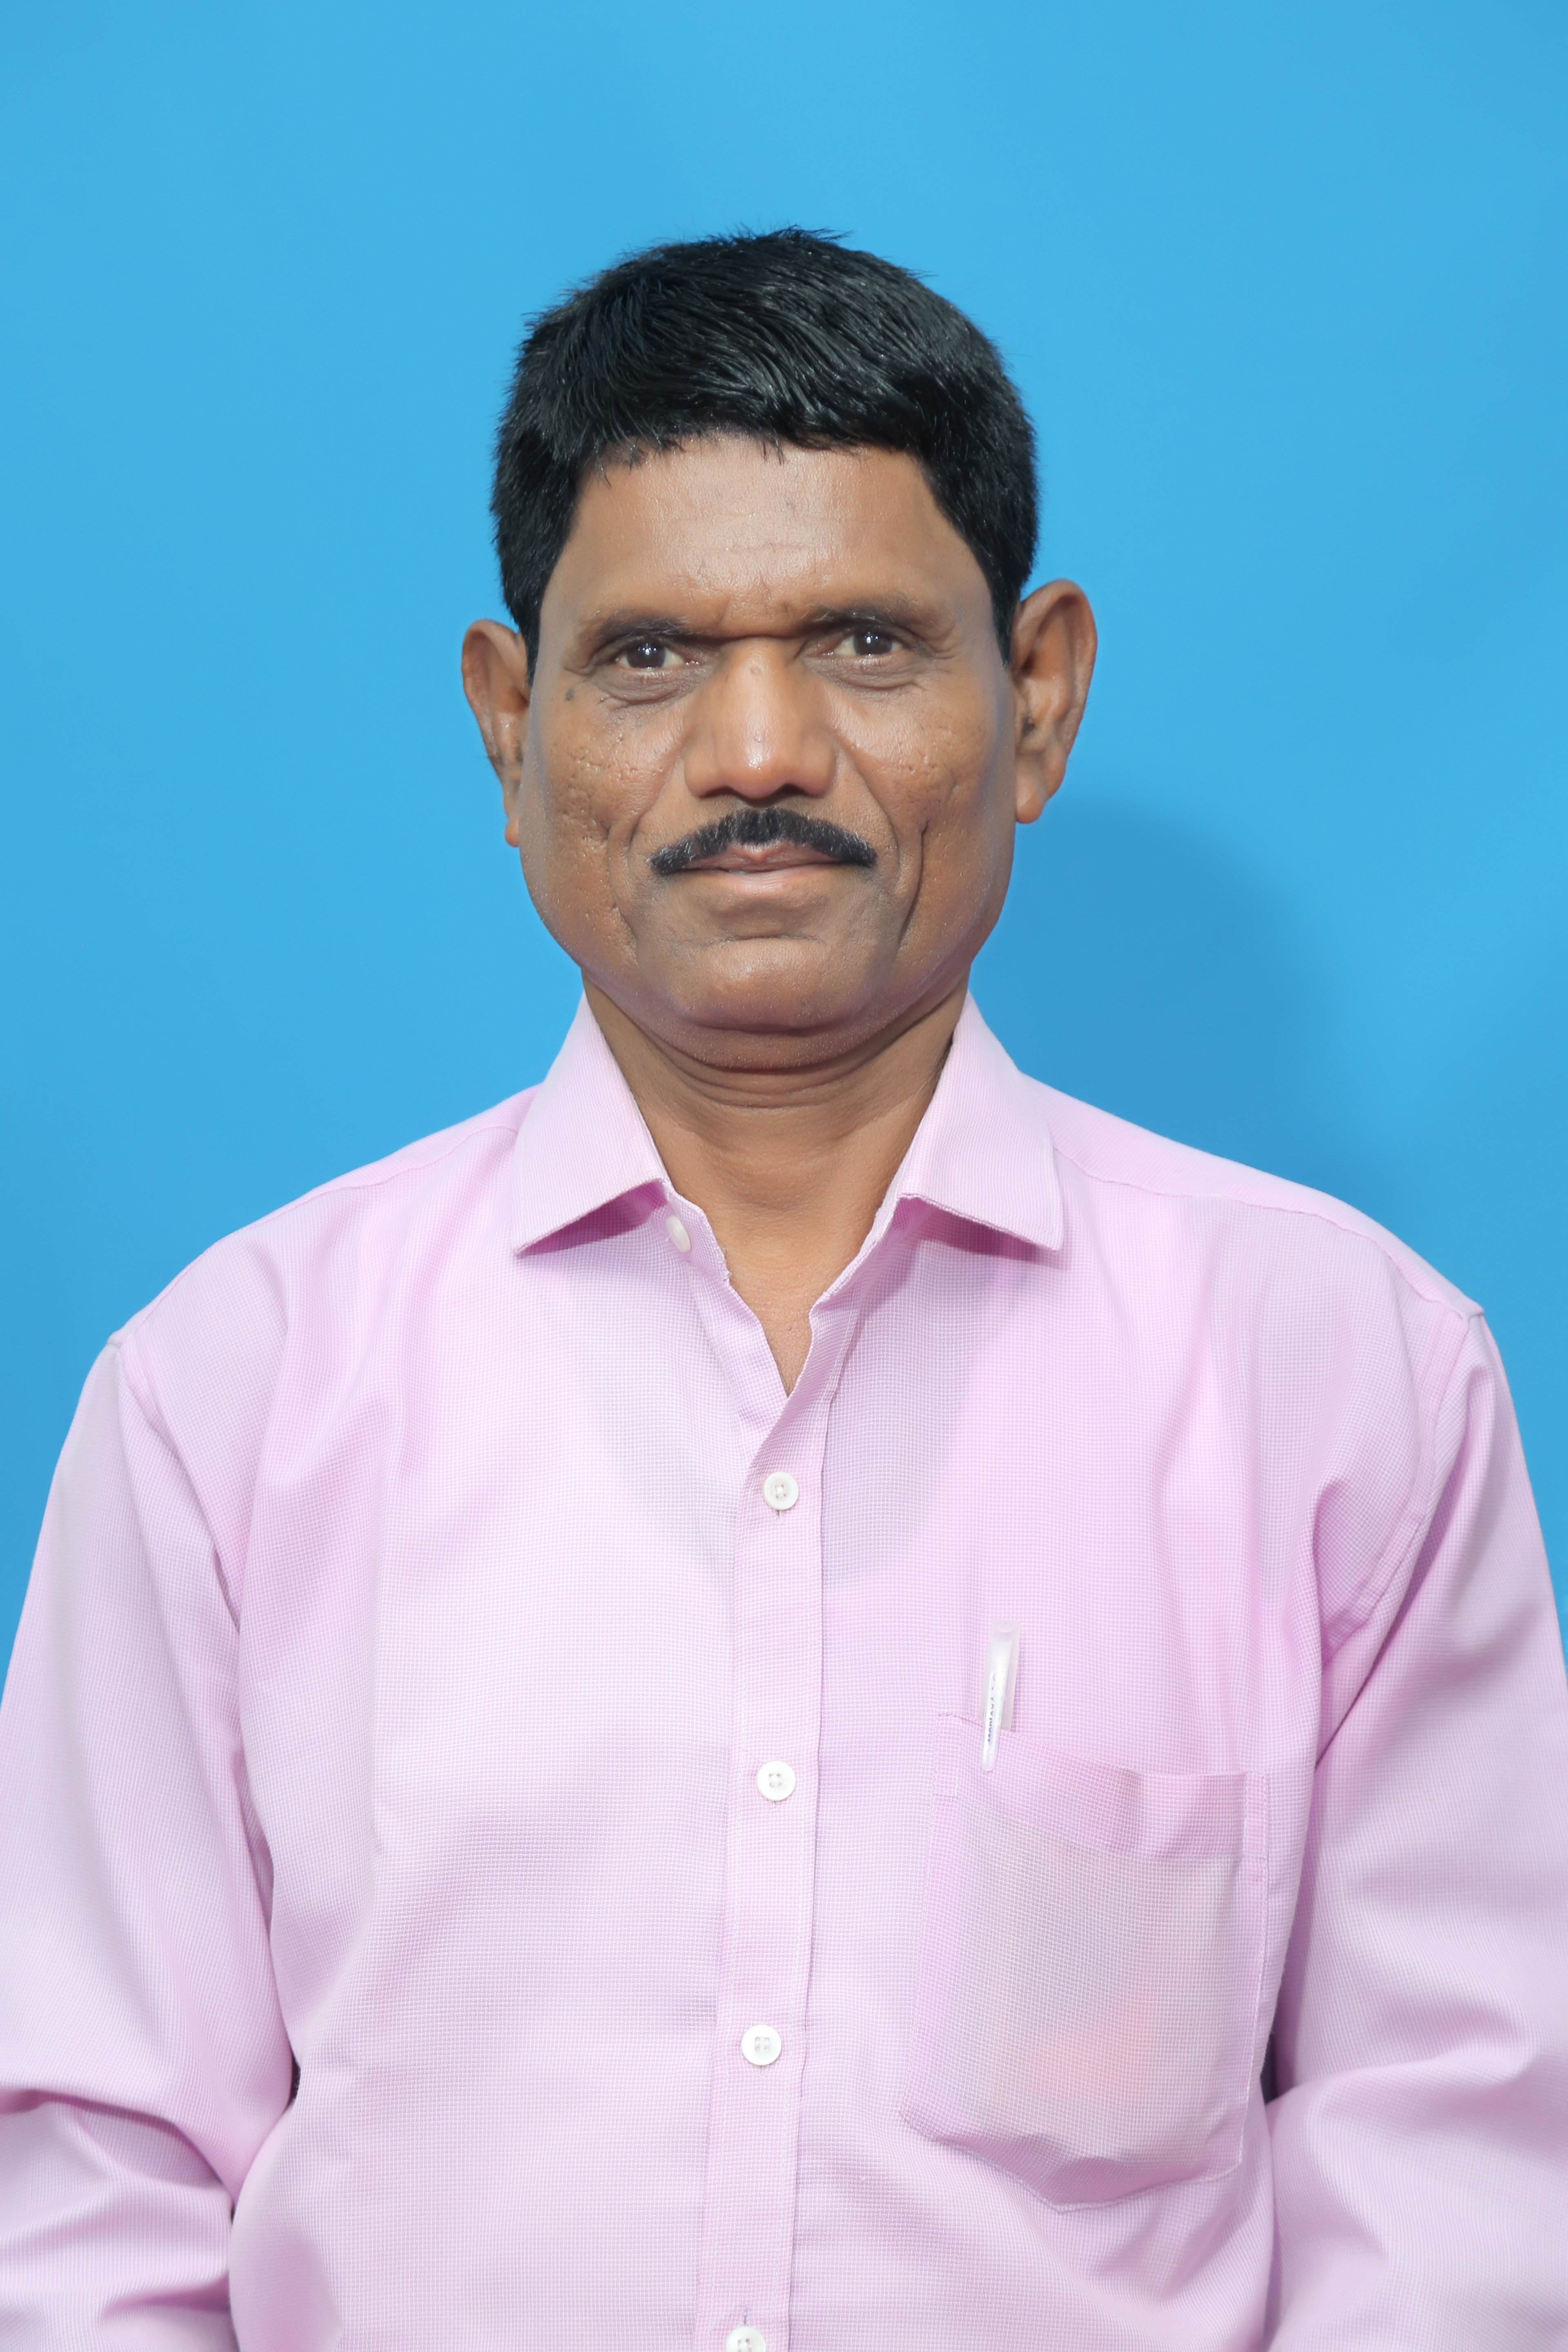 Mr. Balkrushan Shankar Diwanji